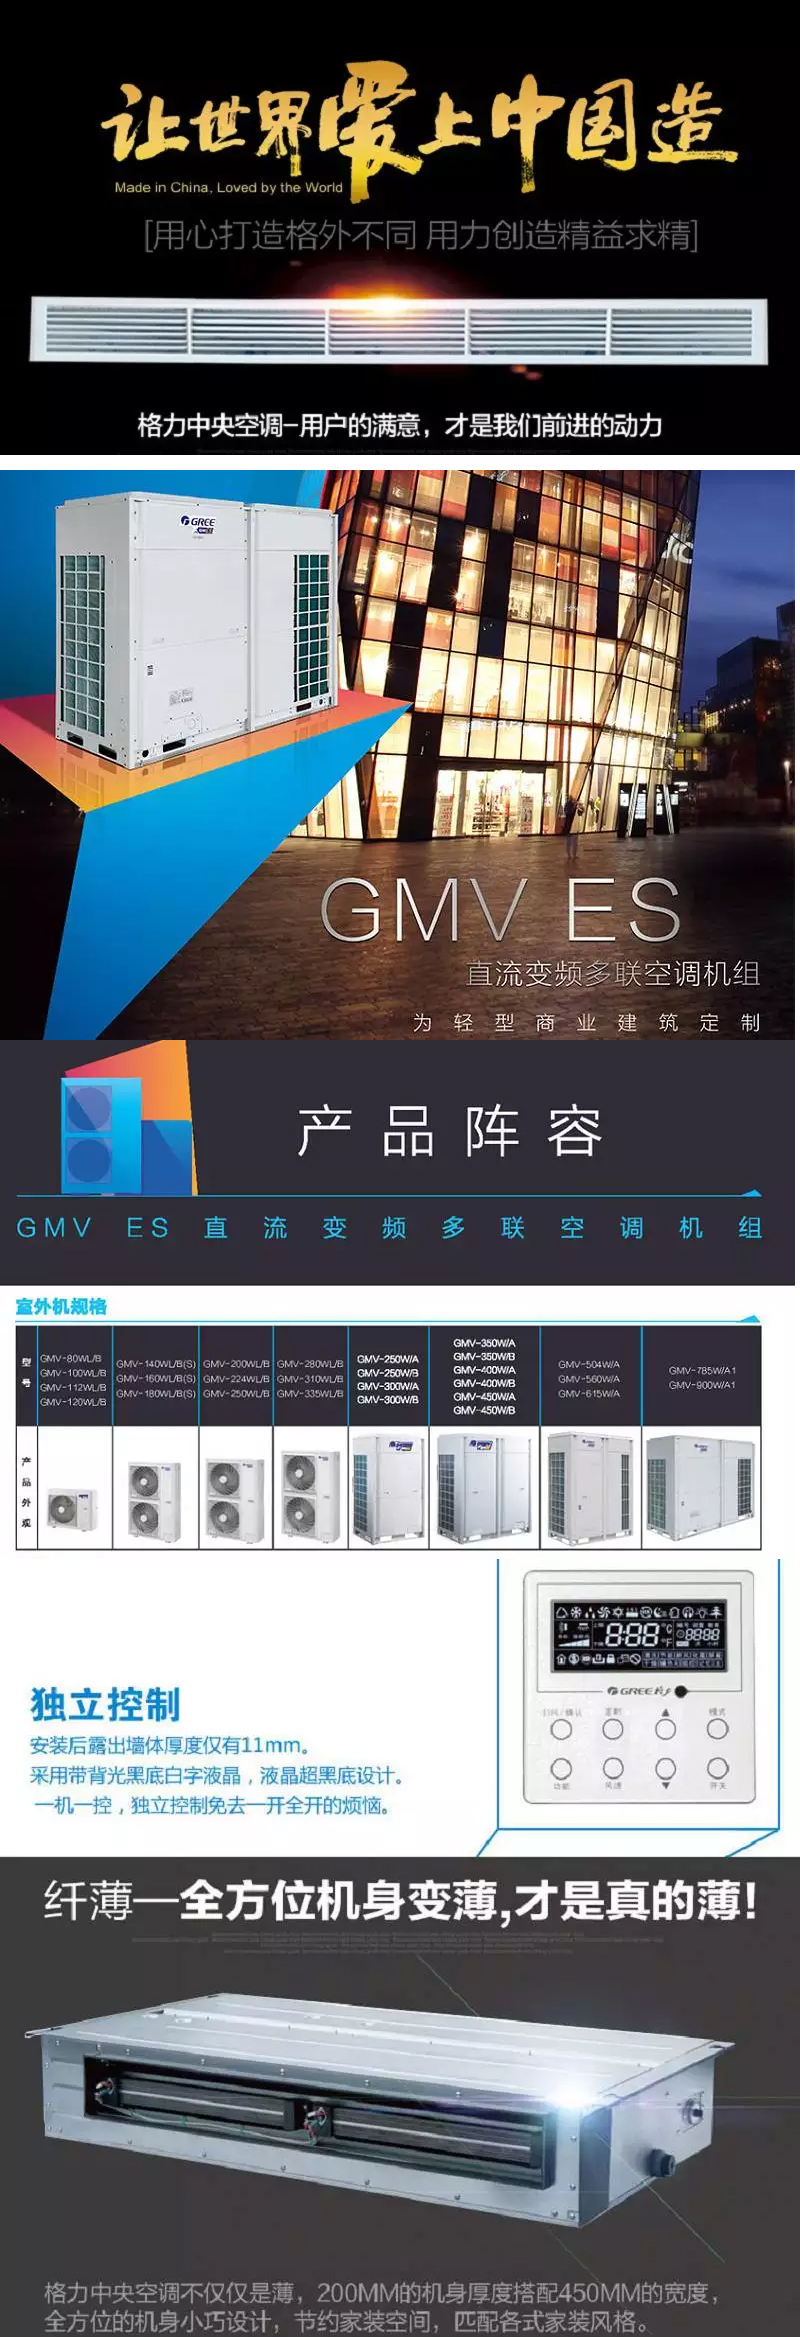 GMV6人工智能多联空调机组GMV-252WM/X